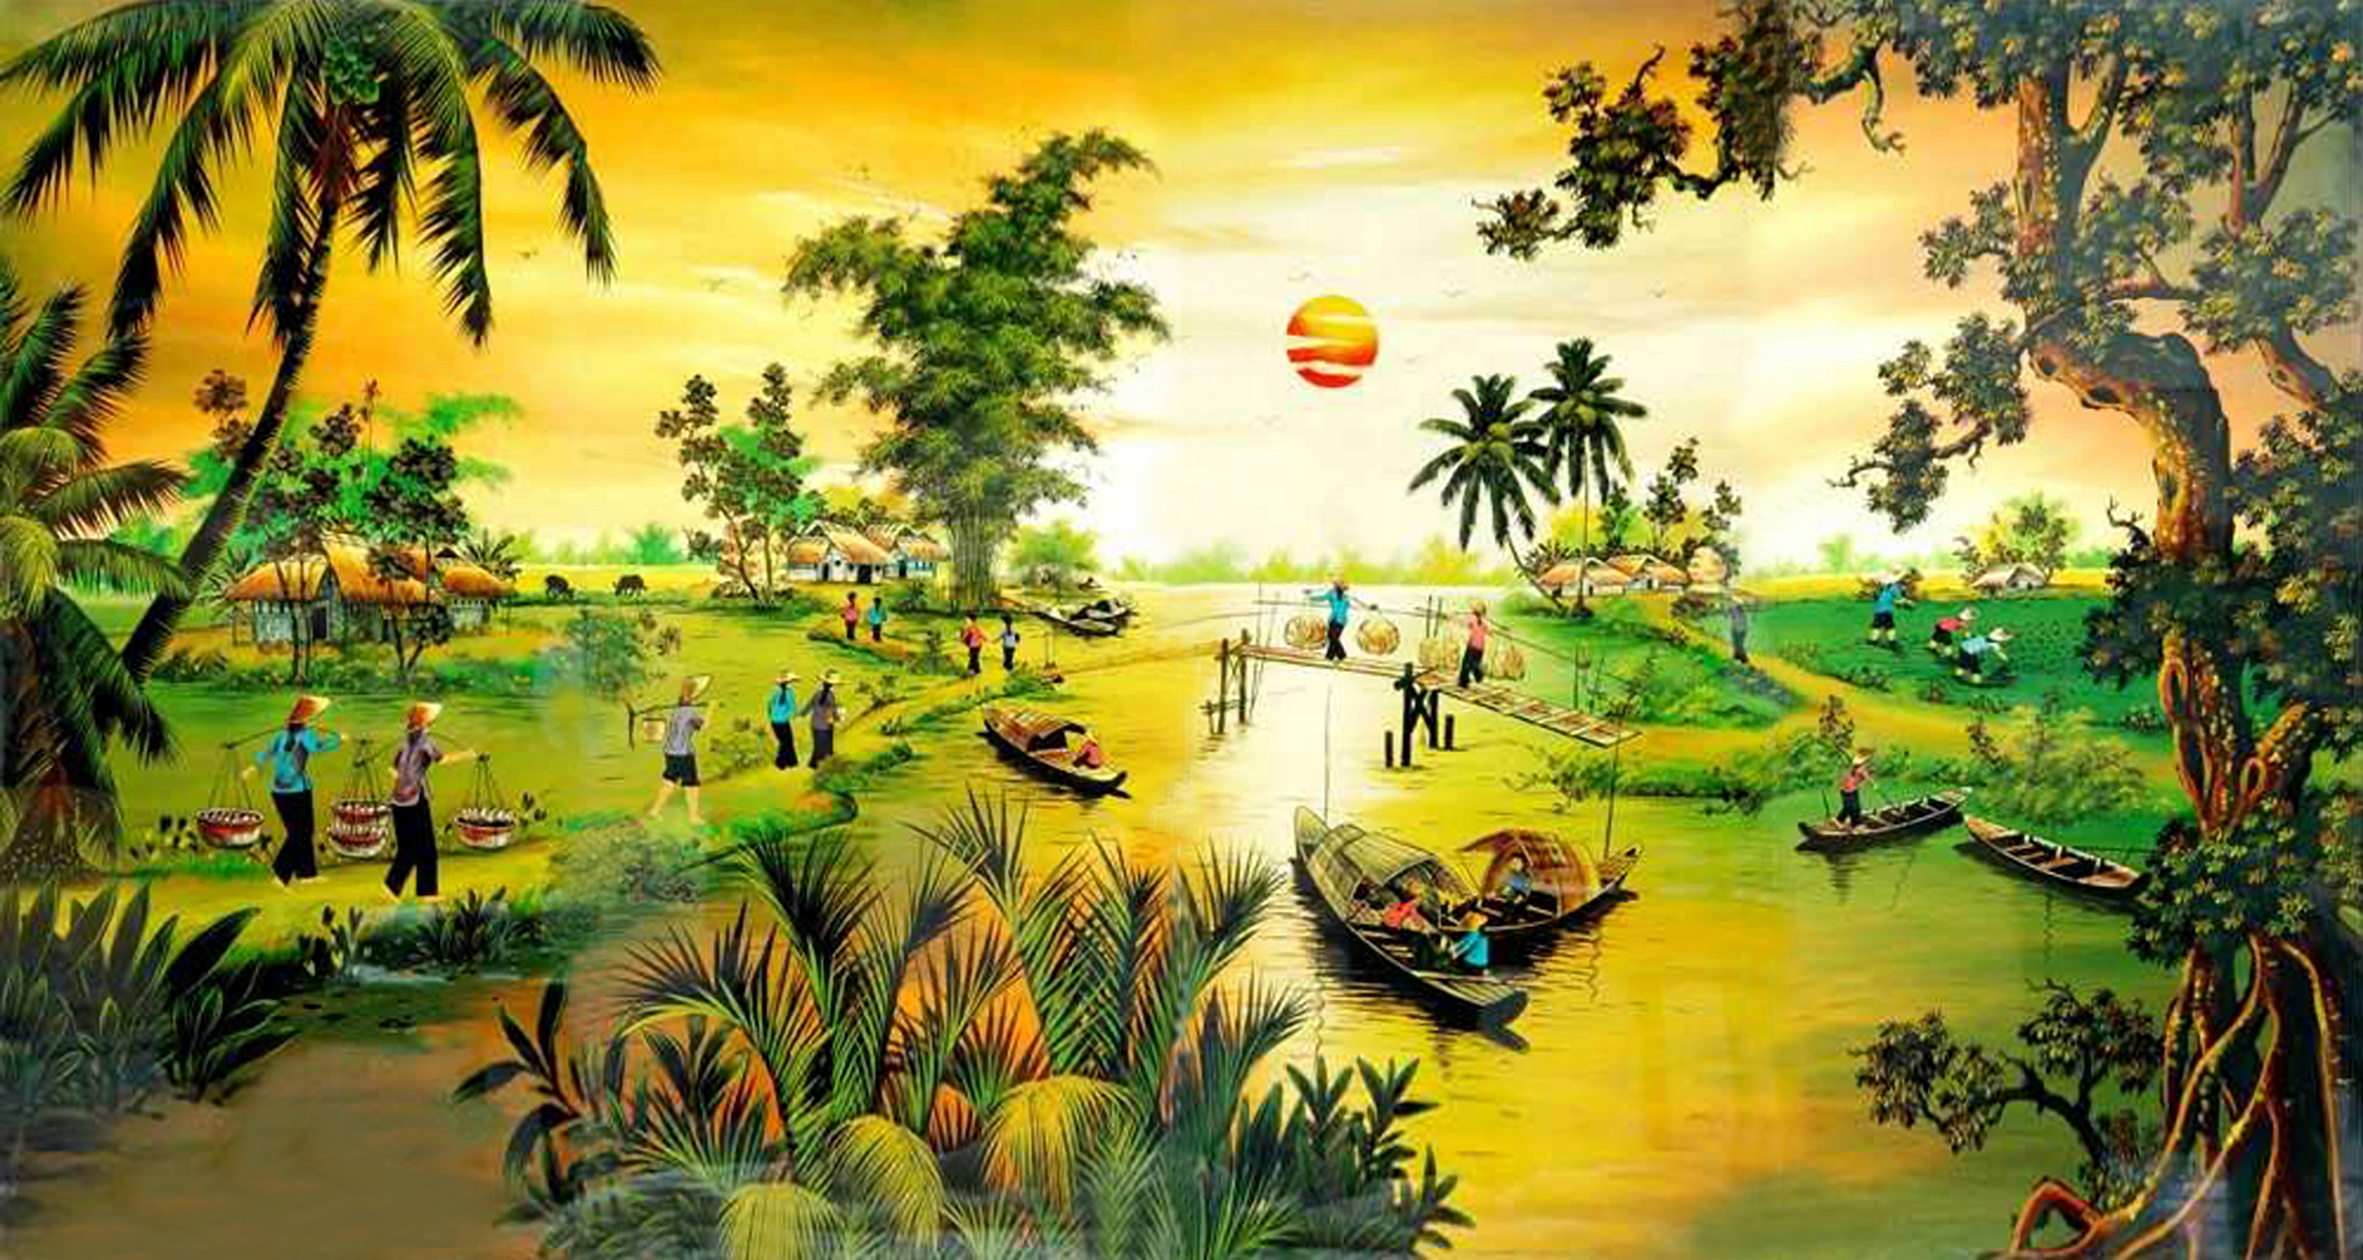 Những mẫu tranh sơn dầu phong cảnh đồng quê Việt Nam